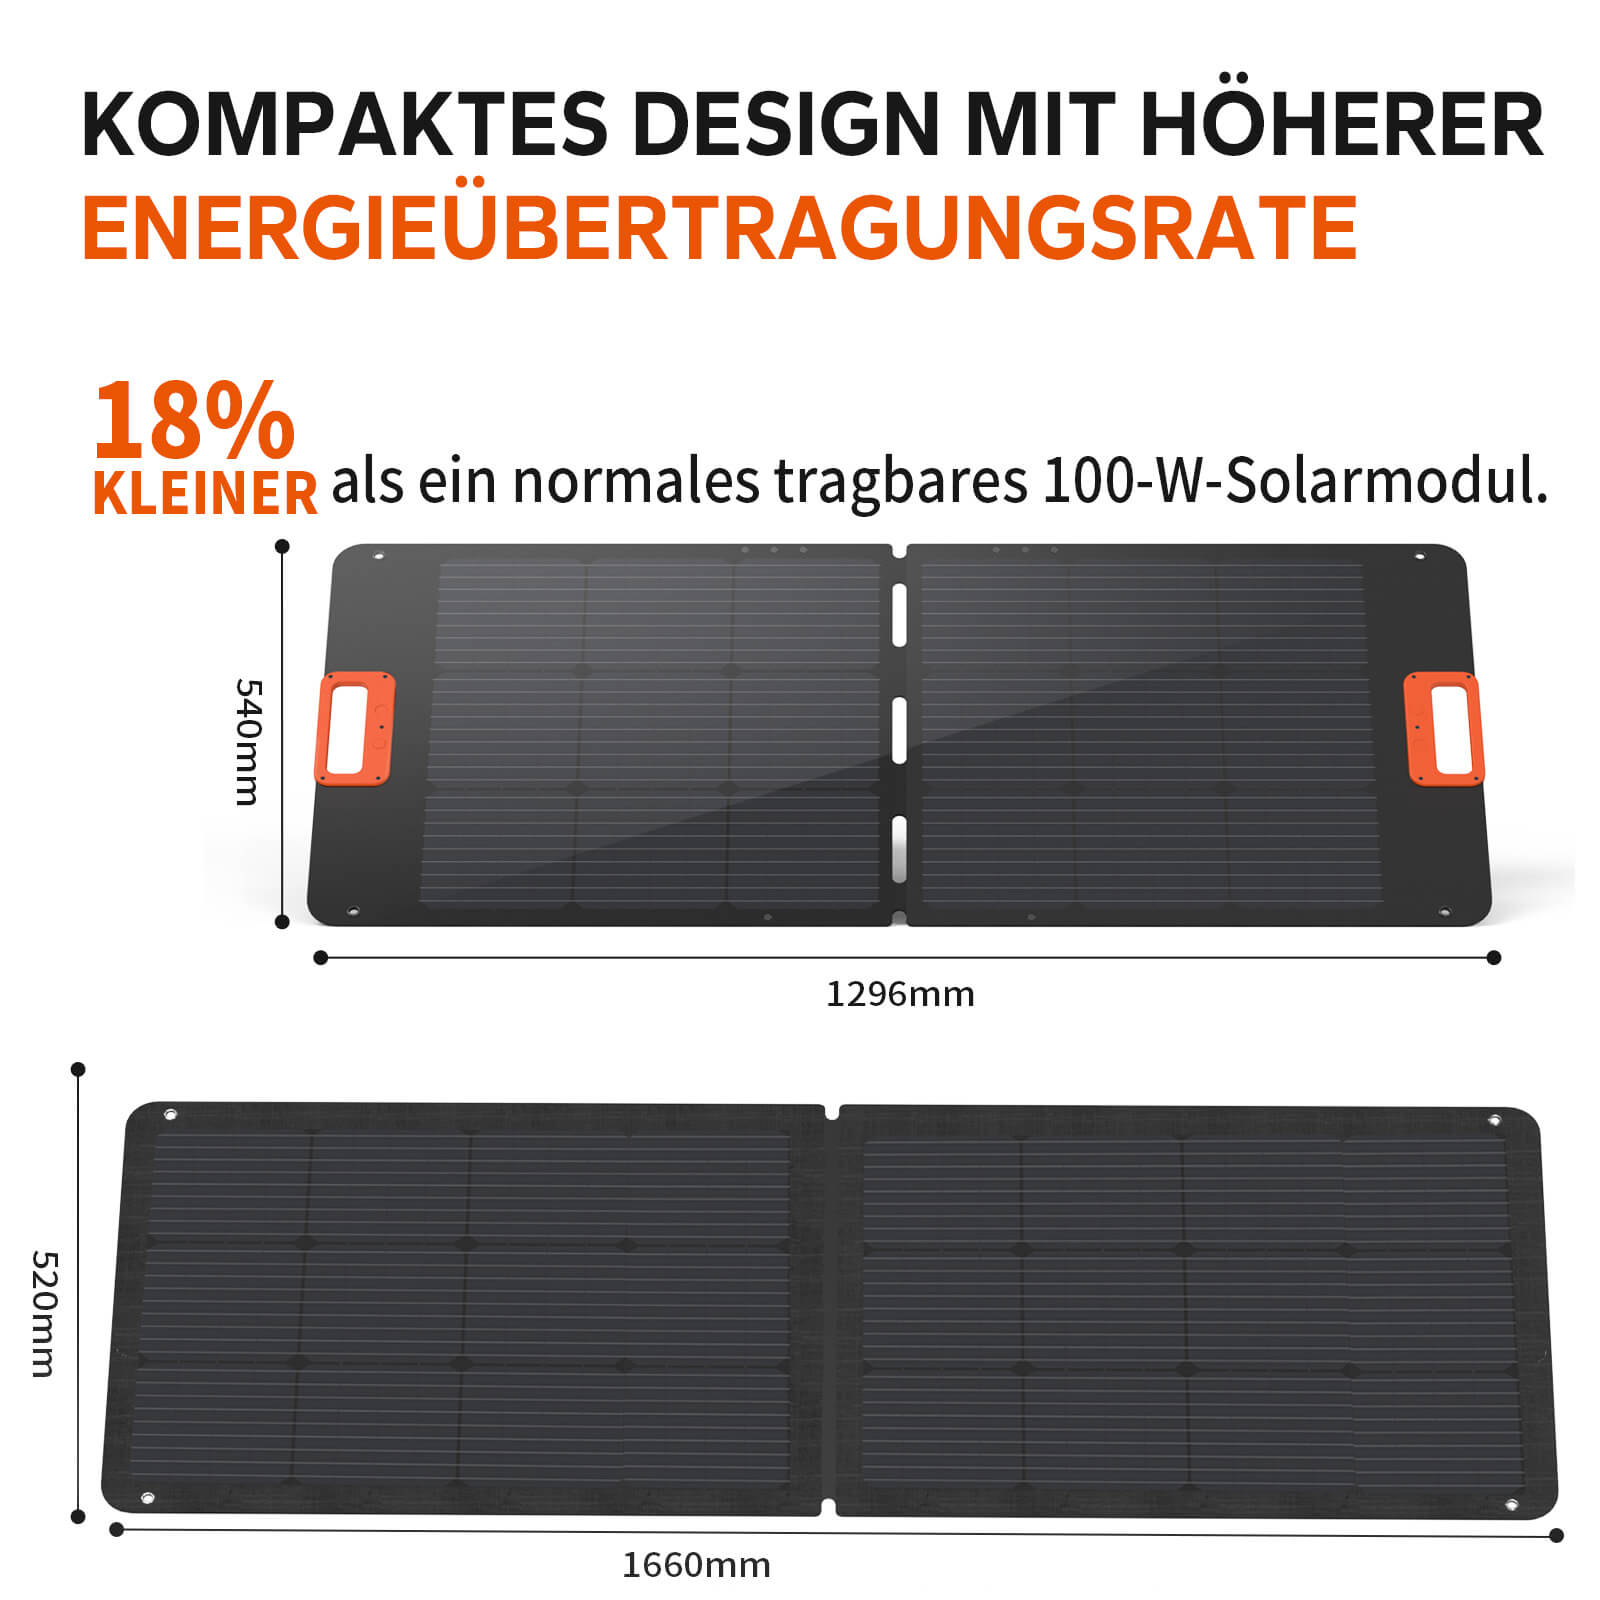 🔥Cena końcowa: 299,99 €🔥Przenośna elektrownia LiTime 320 W + panel słoneczny 100 W